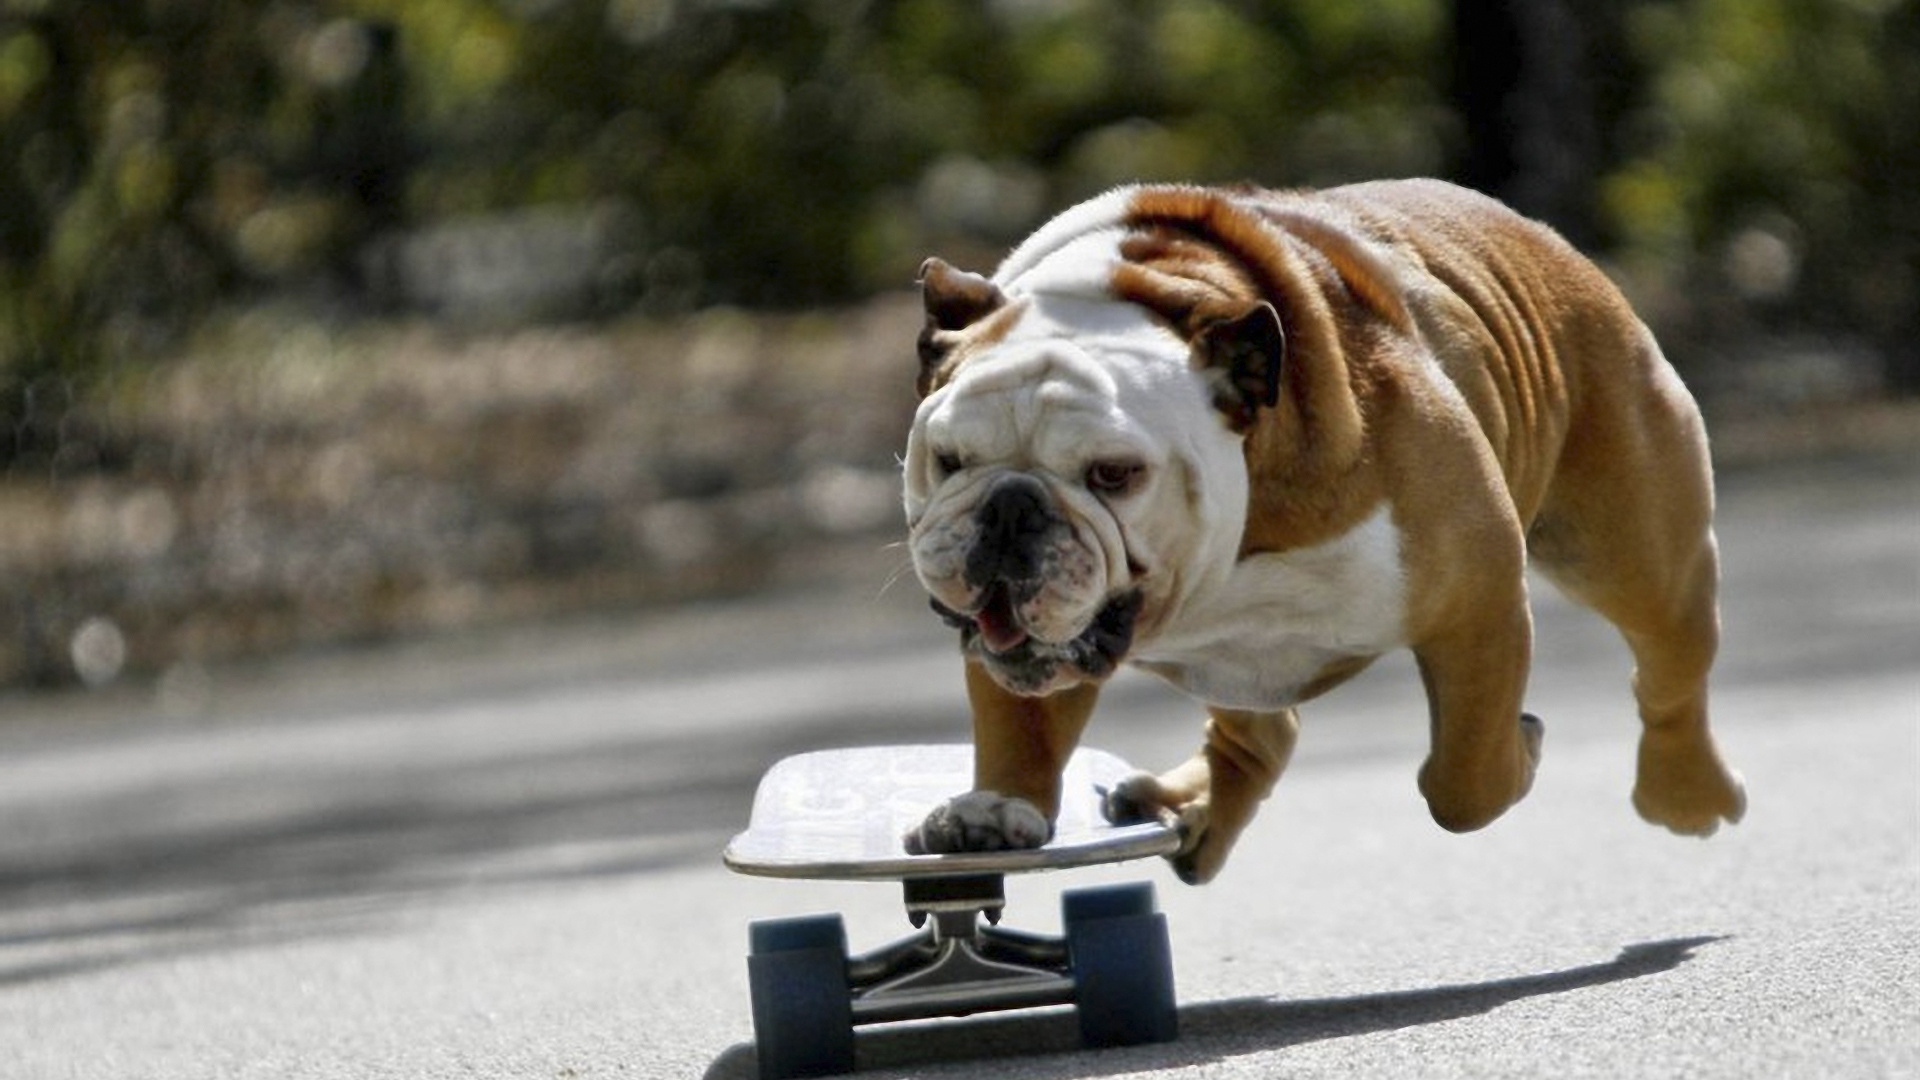 Wallpaper Dog Bulldog Skate Full HD 1080p Background